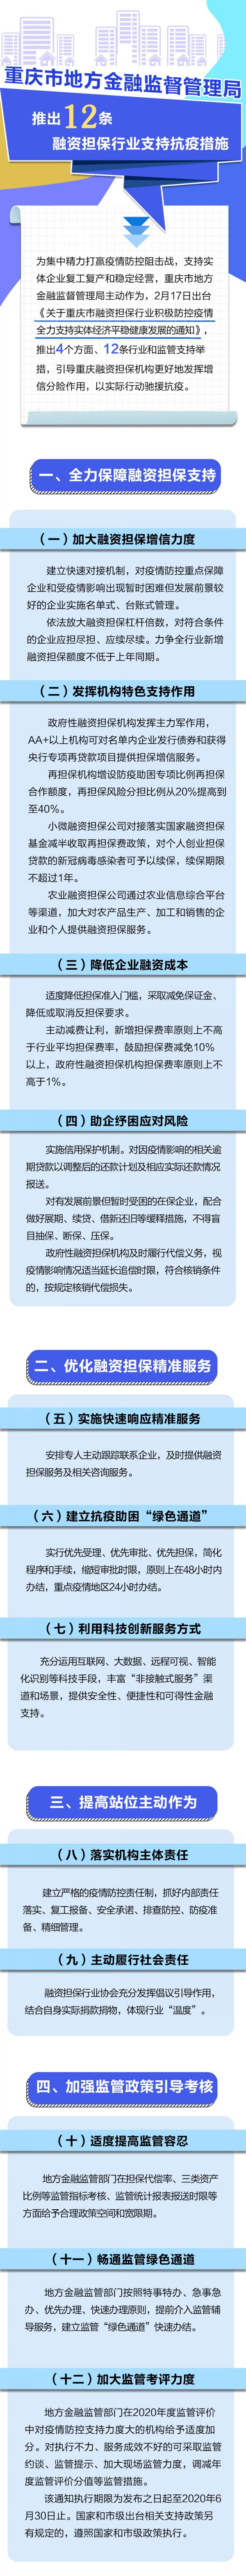 重庆市地方金融监管局推出12条融资担保行业支持抗疫措施